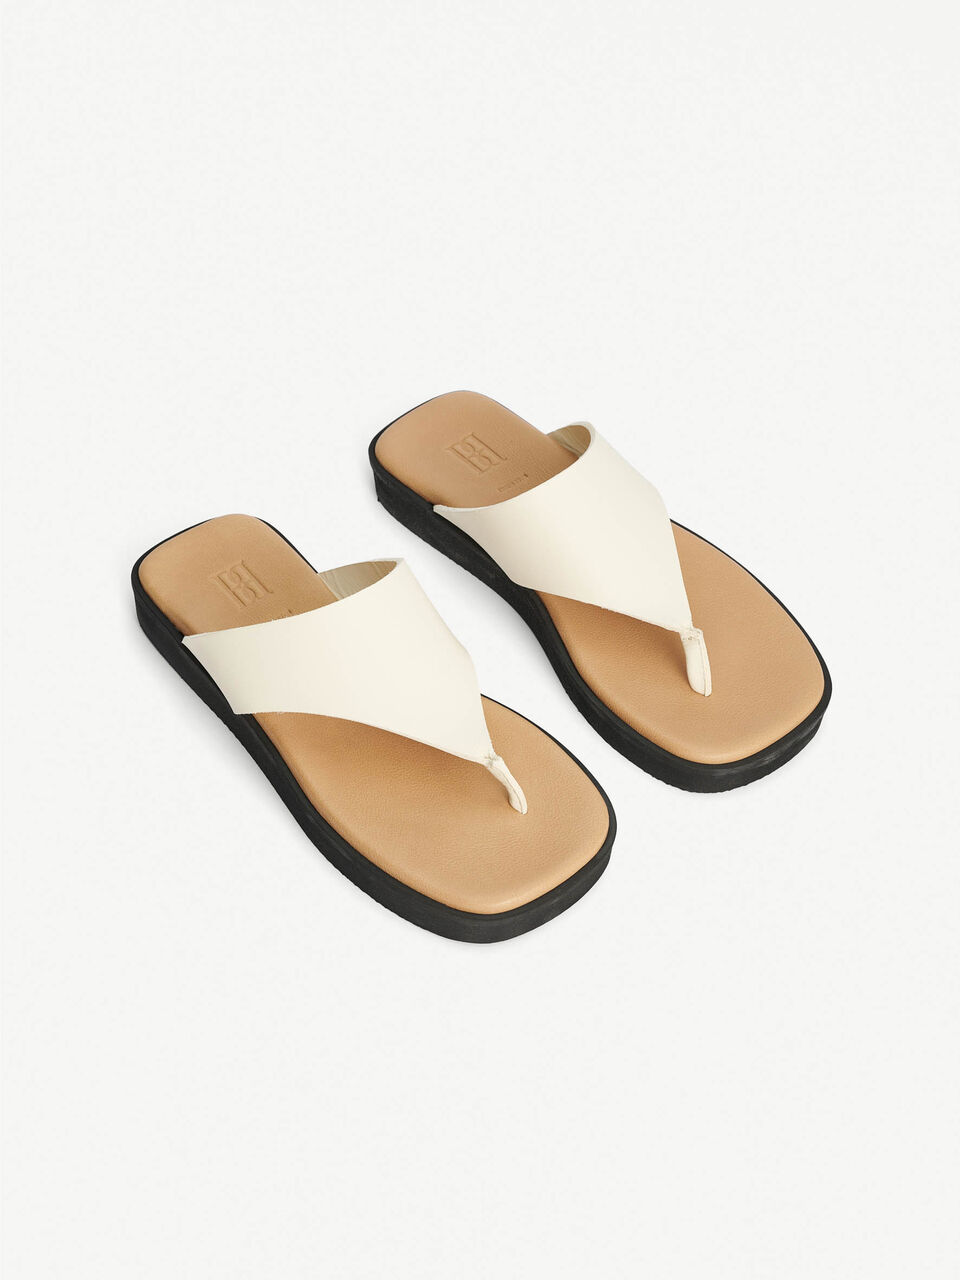 I de fleste tilfælde Swipe Frugtbar Marisol leather sandals - Buy Shoes online